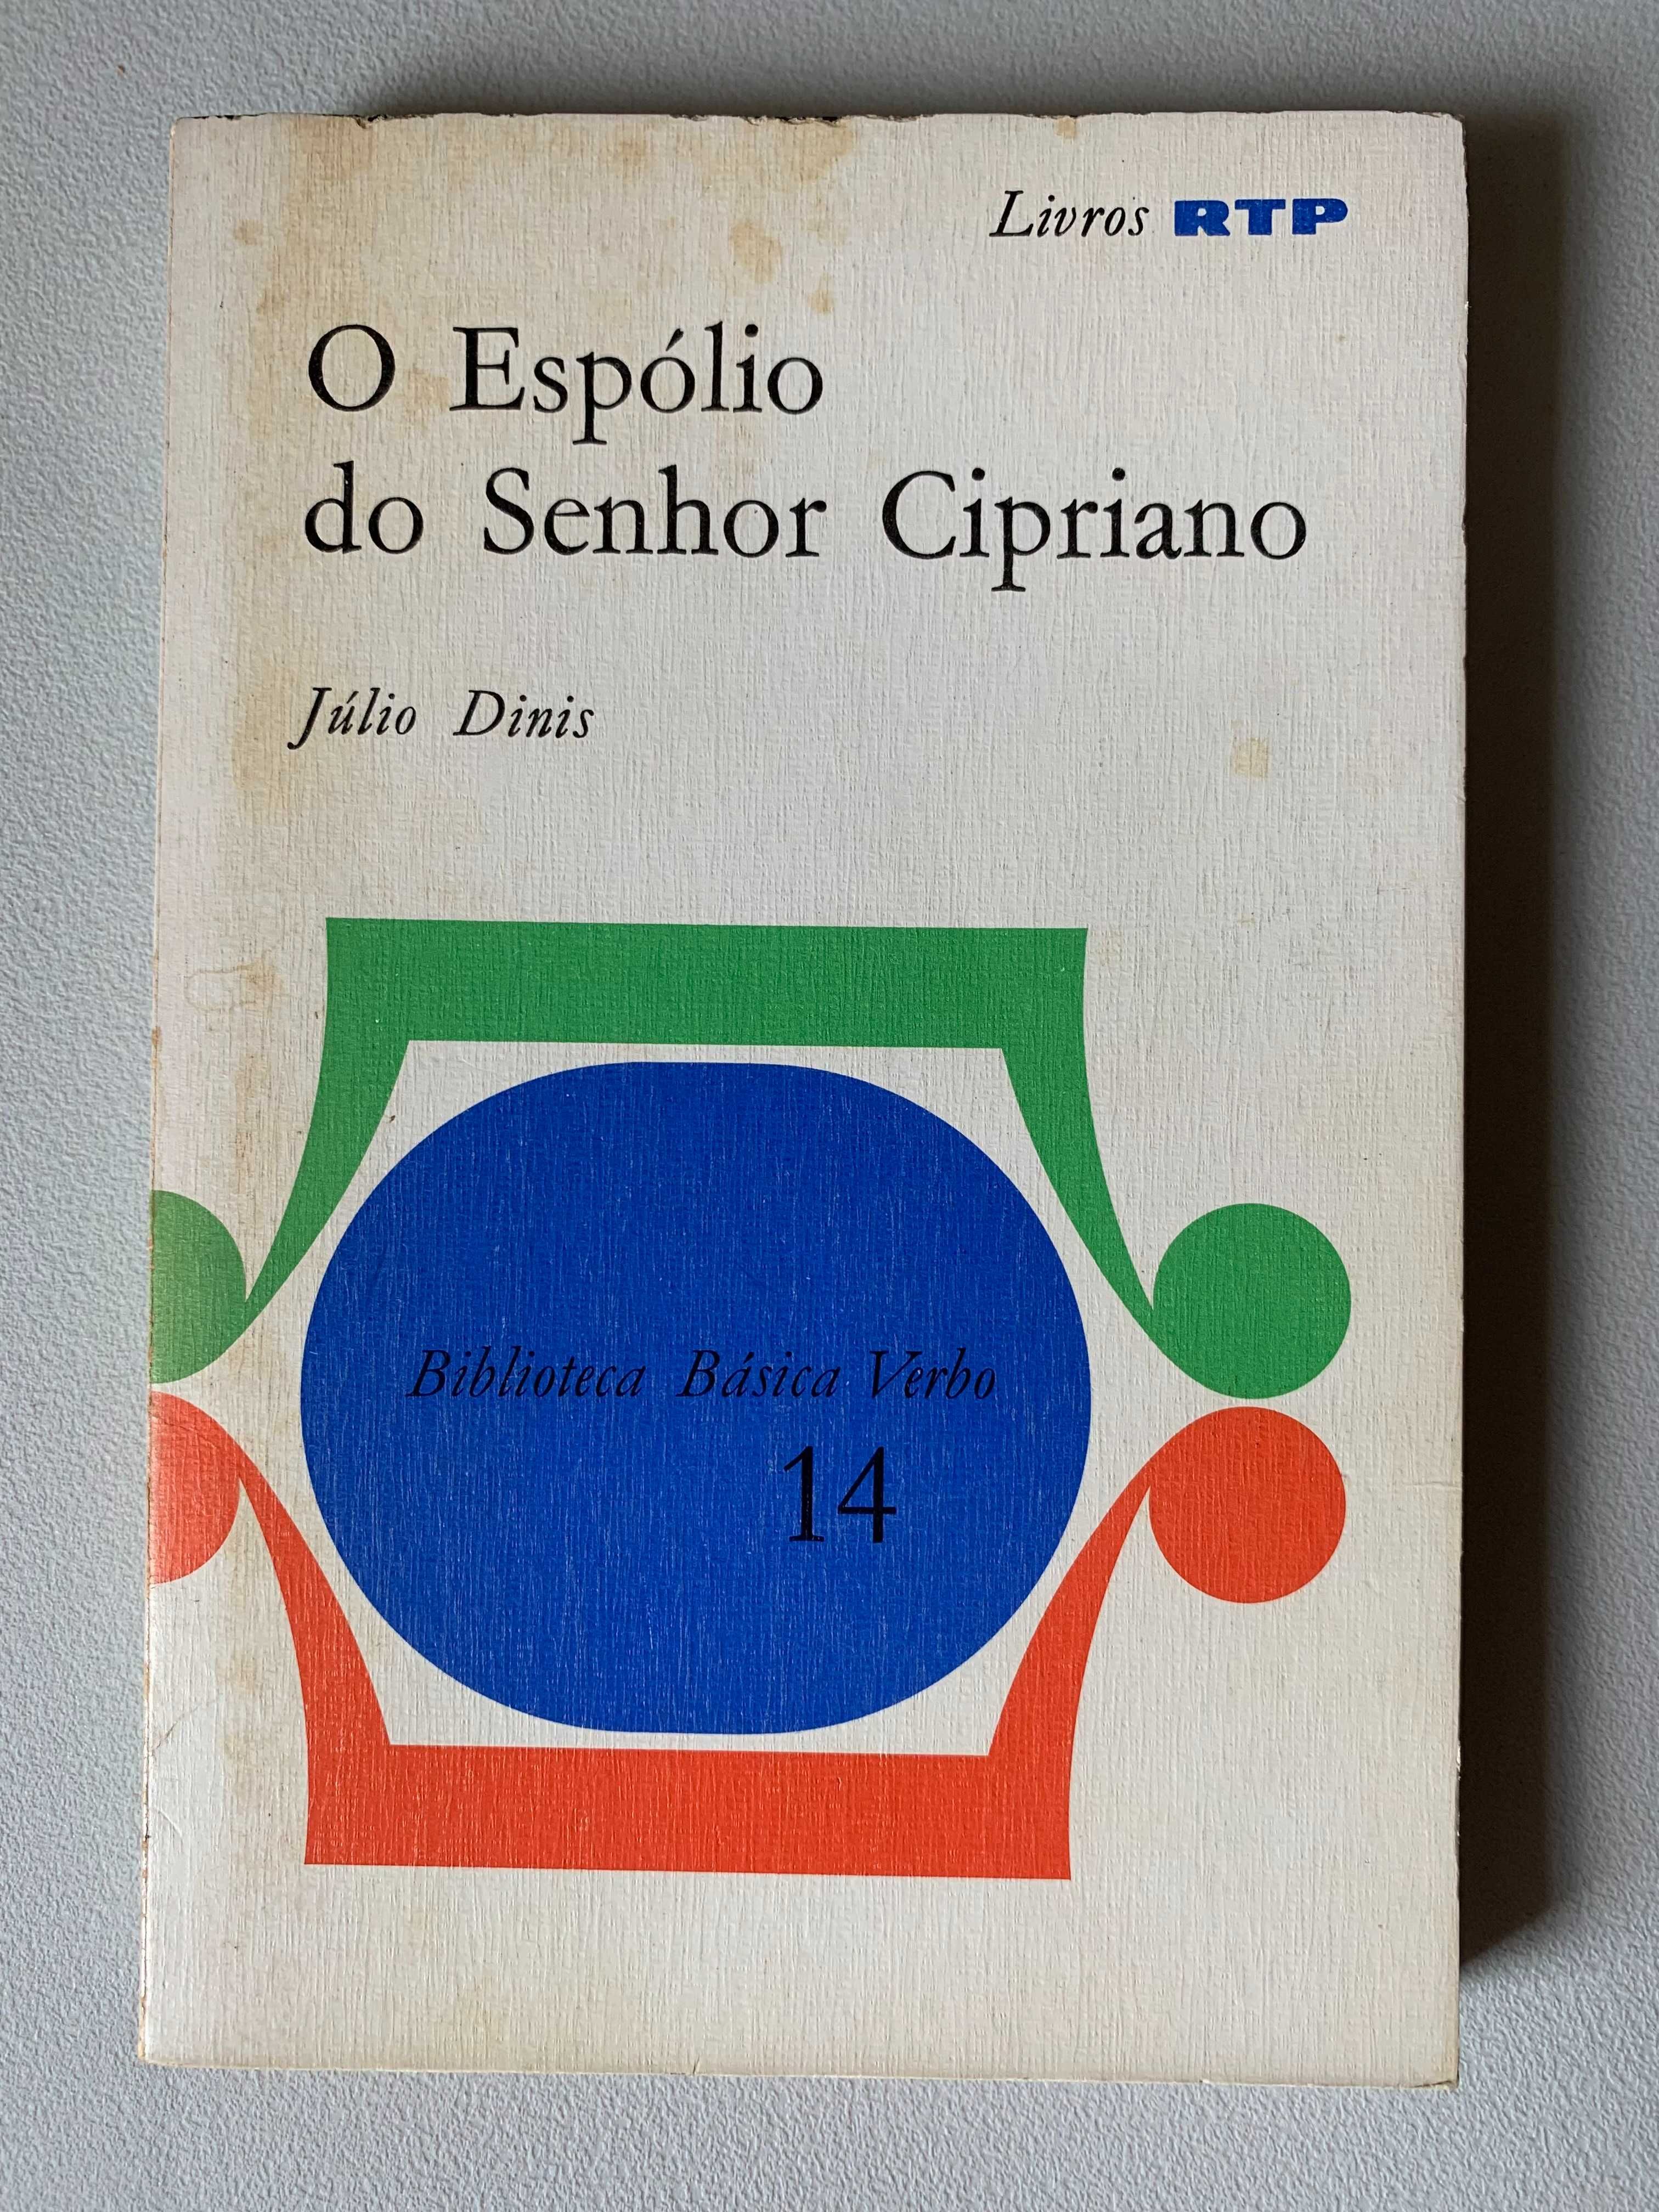 O Espólio do Senhor Cipriano, de Júlio Dinis